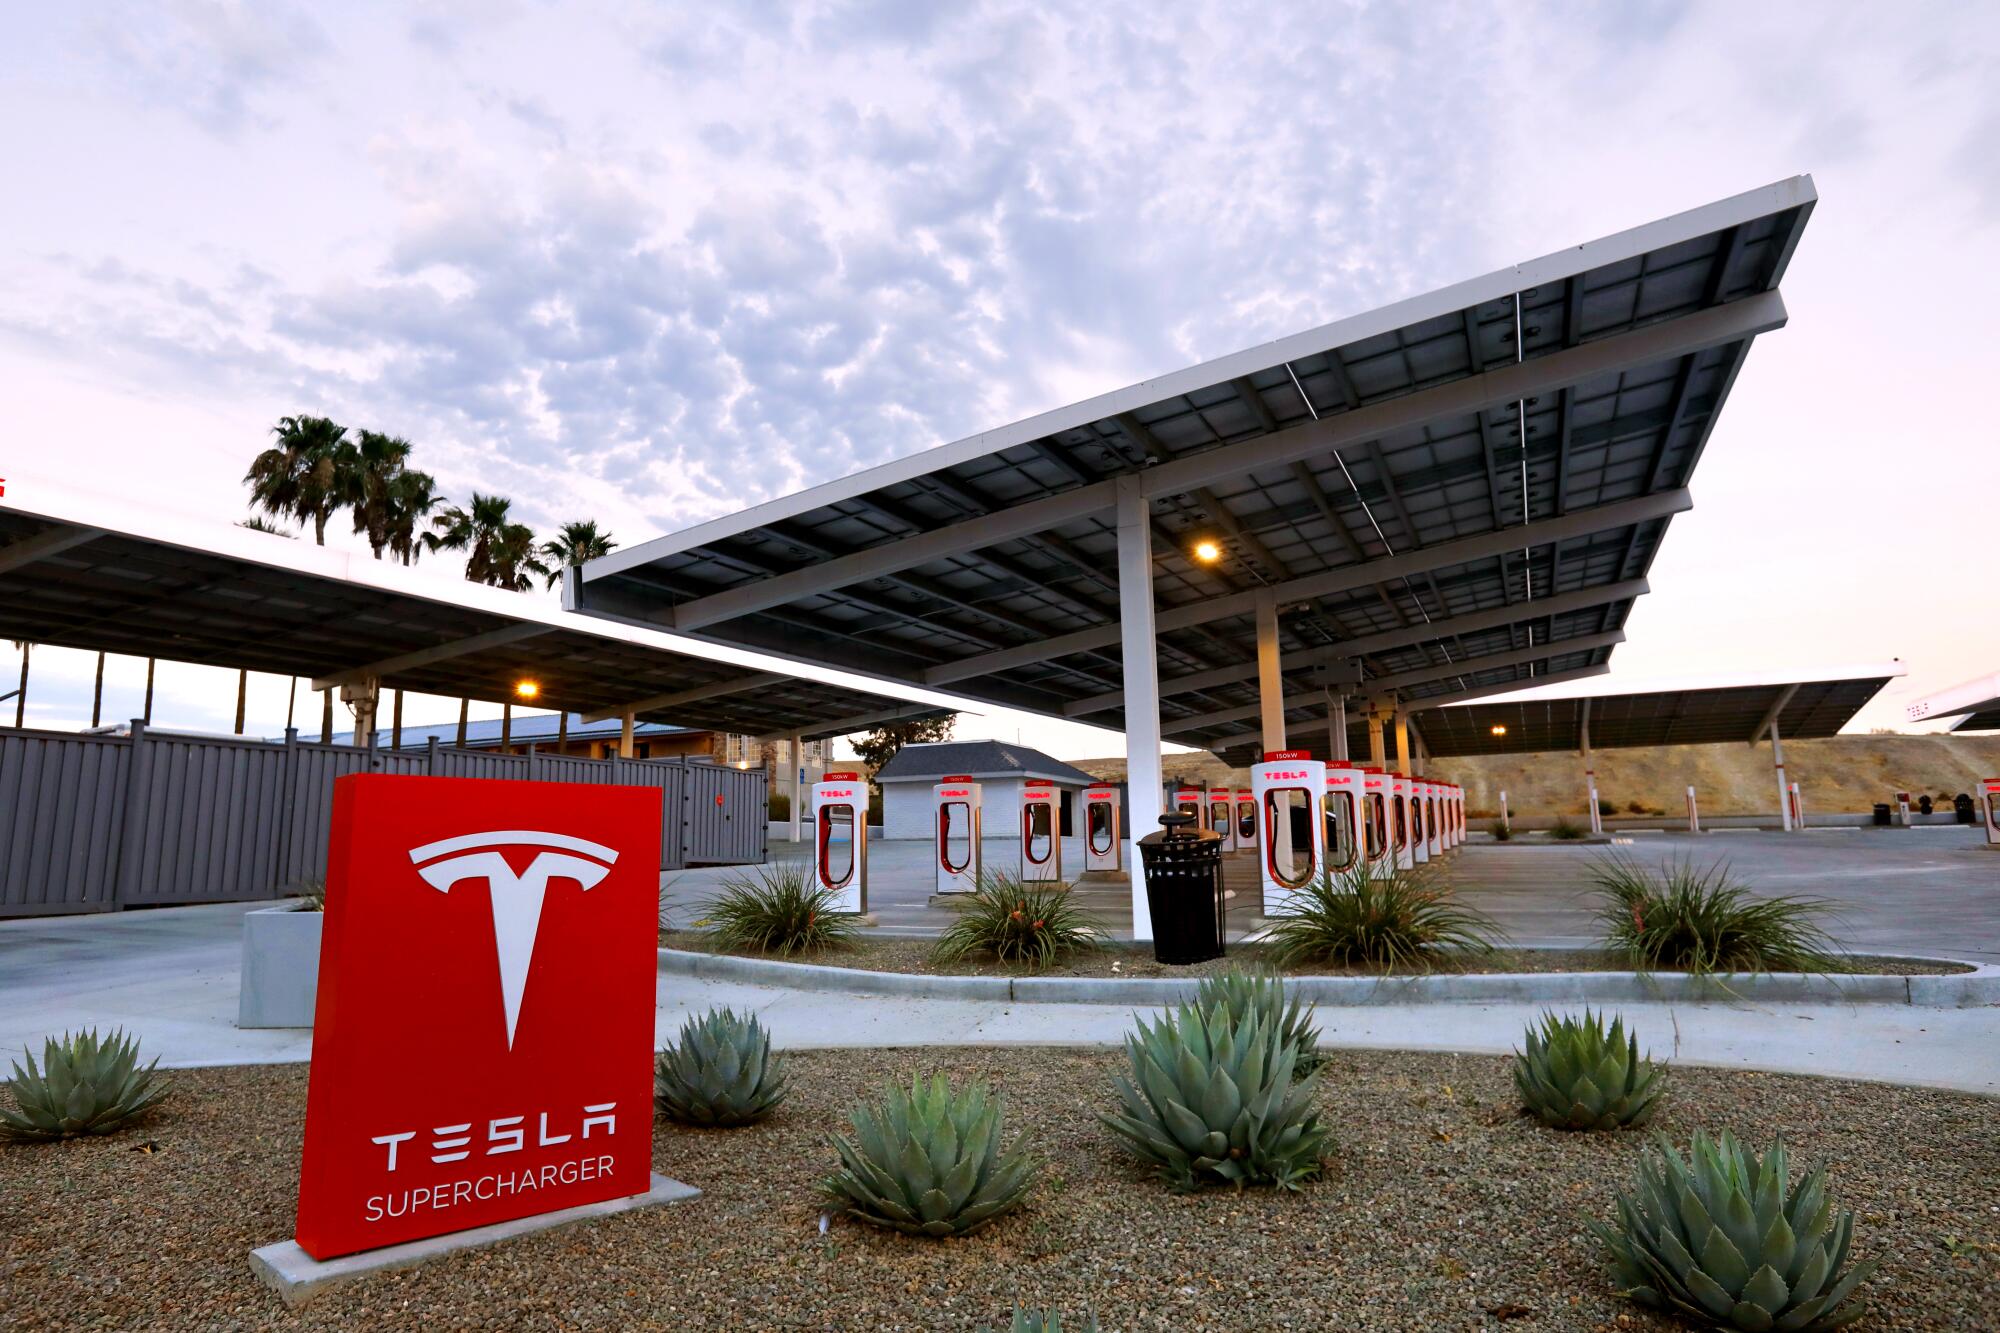 The Tesla Supercharger Station